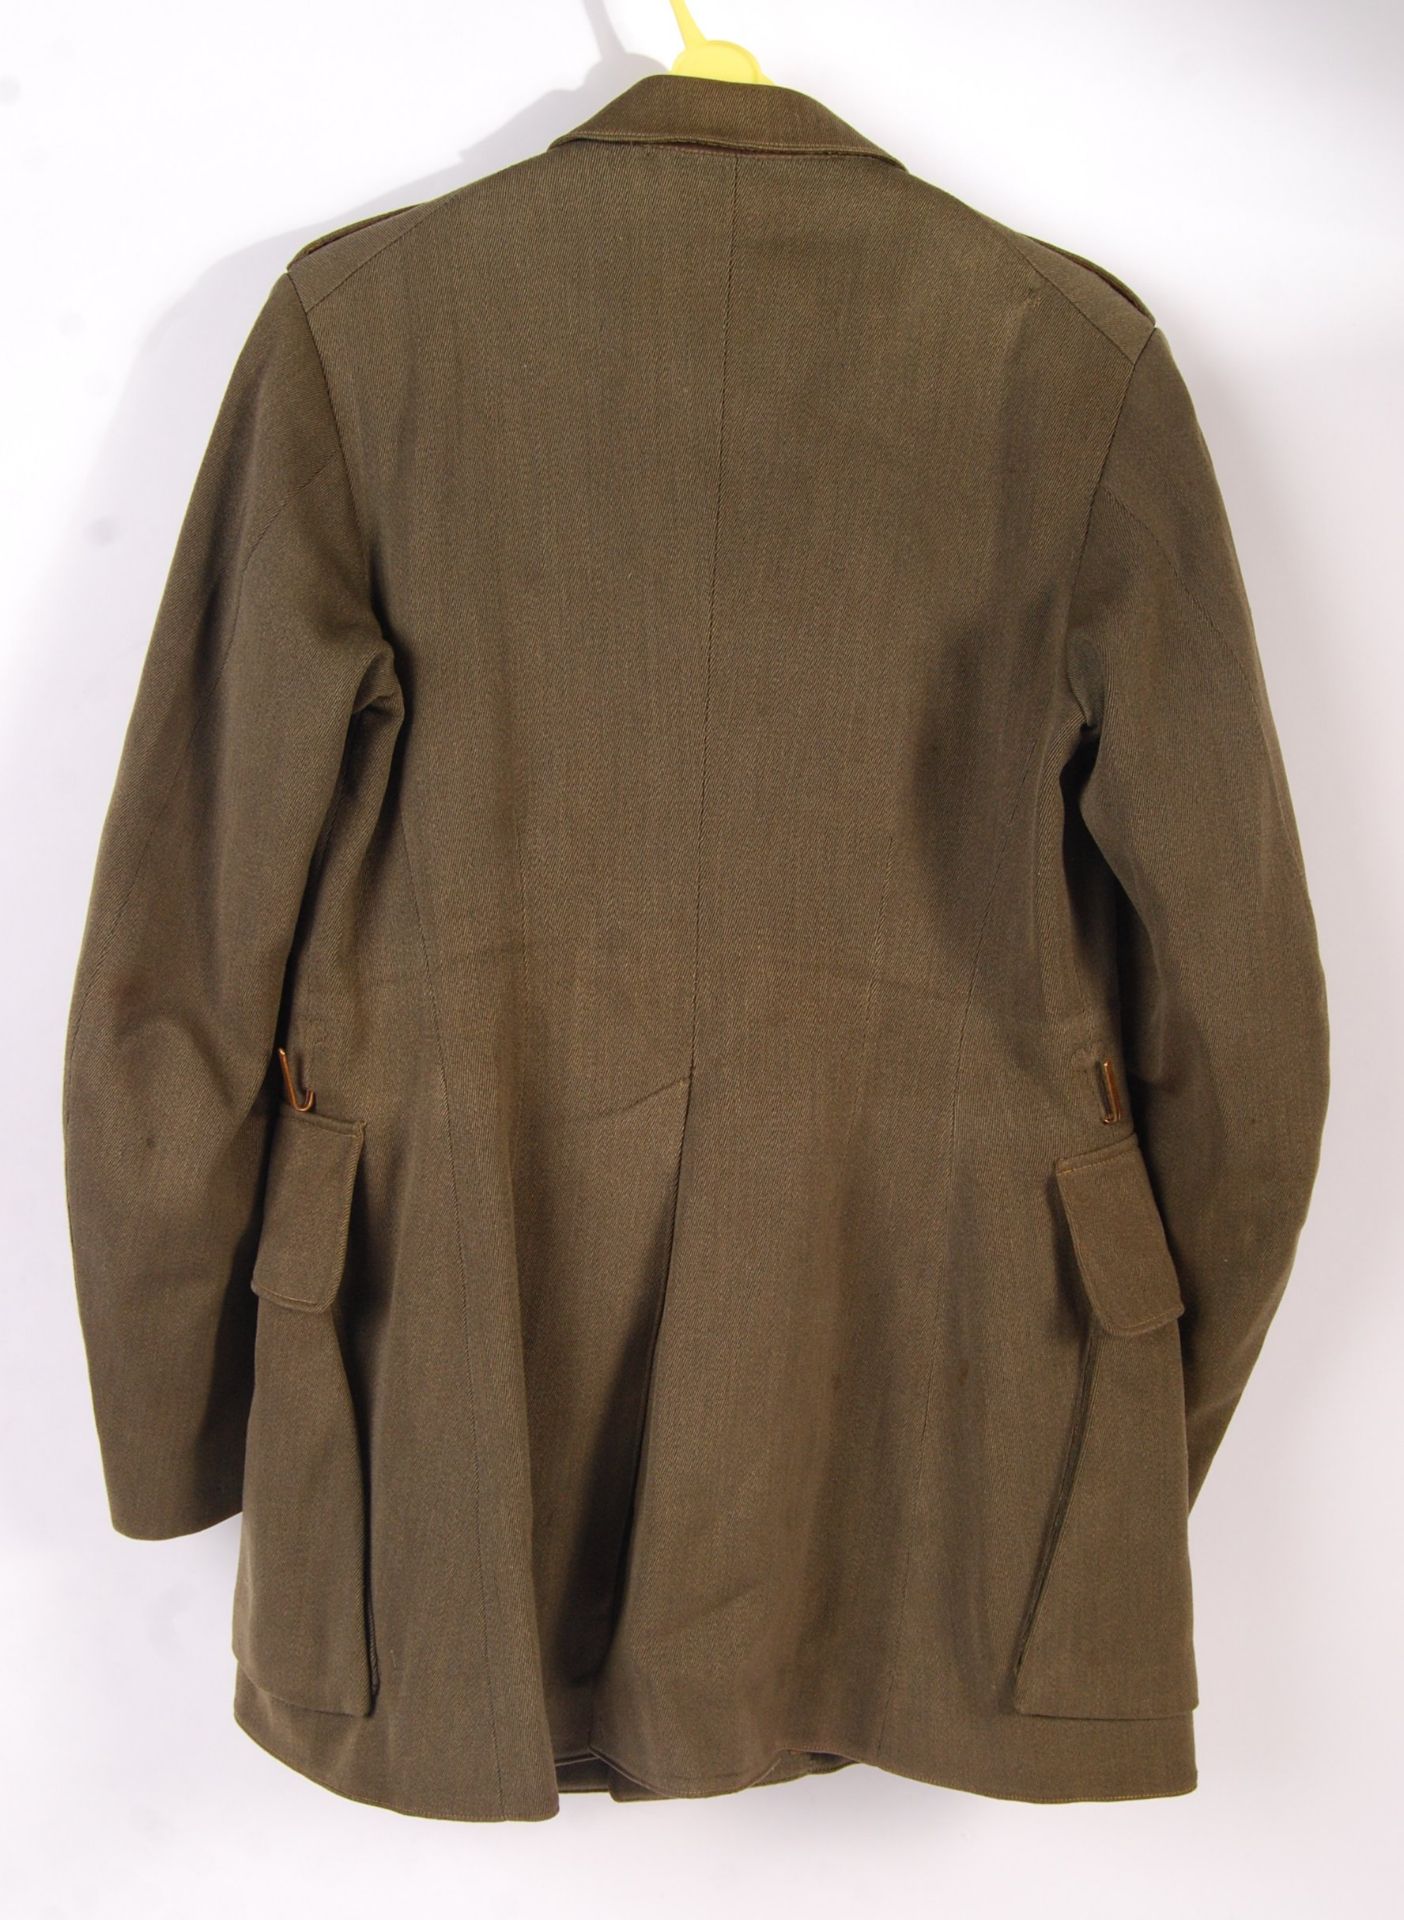 RARE WWI FIRST WORLD WAR DRESS JACKET NAMED TO LT G. SALE - Bild 5 aus 5